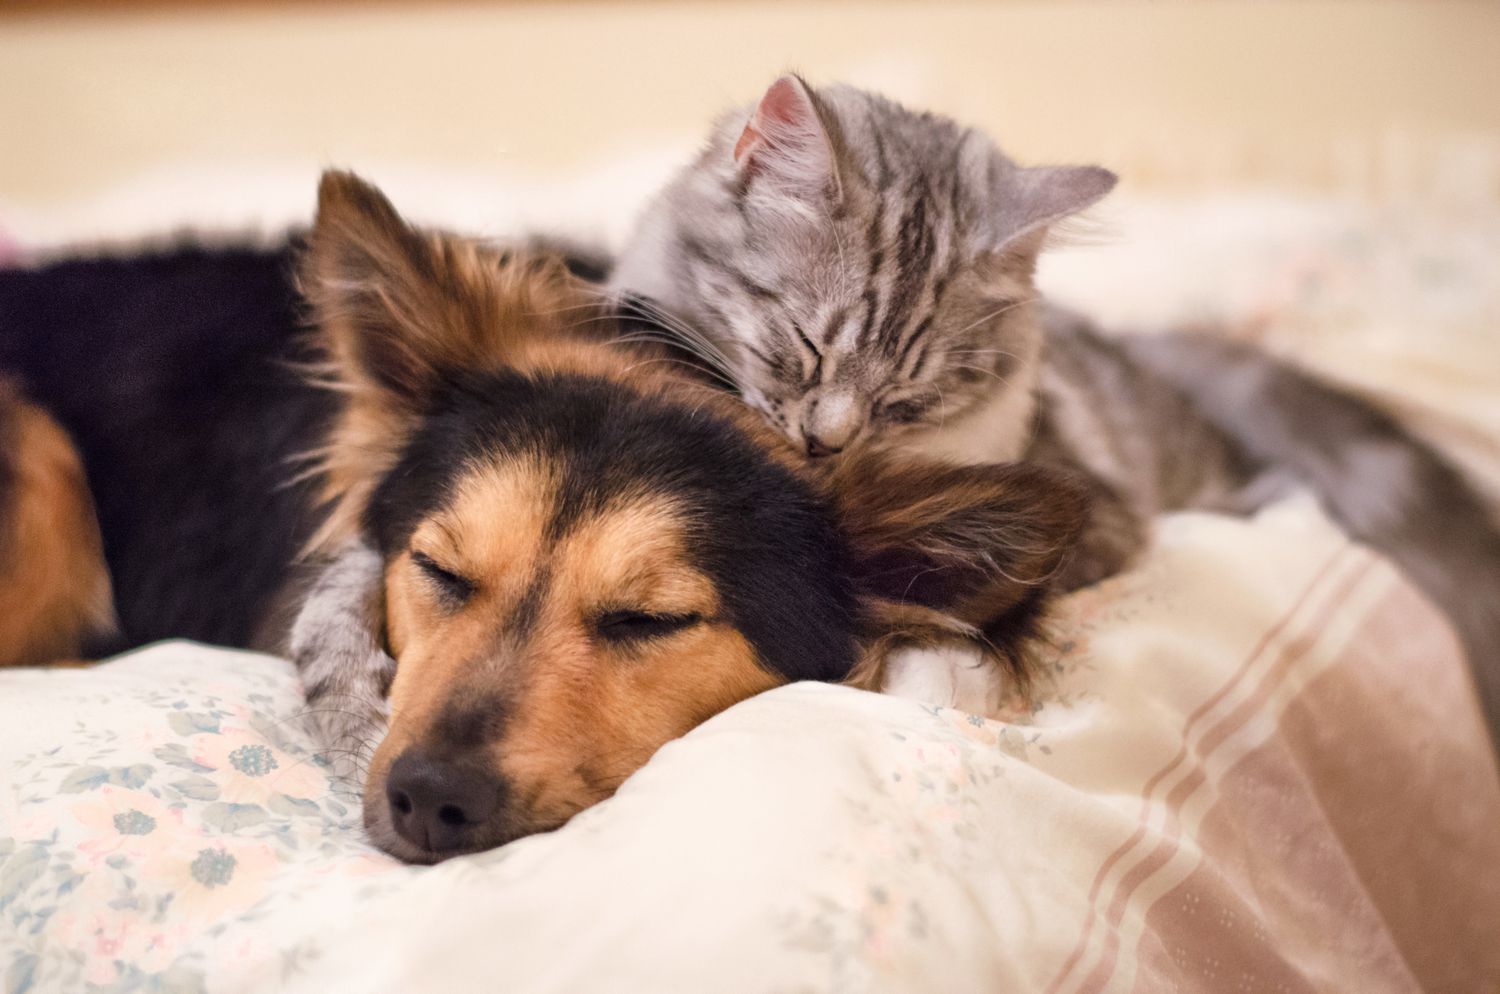 Hund und Katze kuscheln